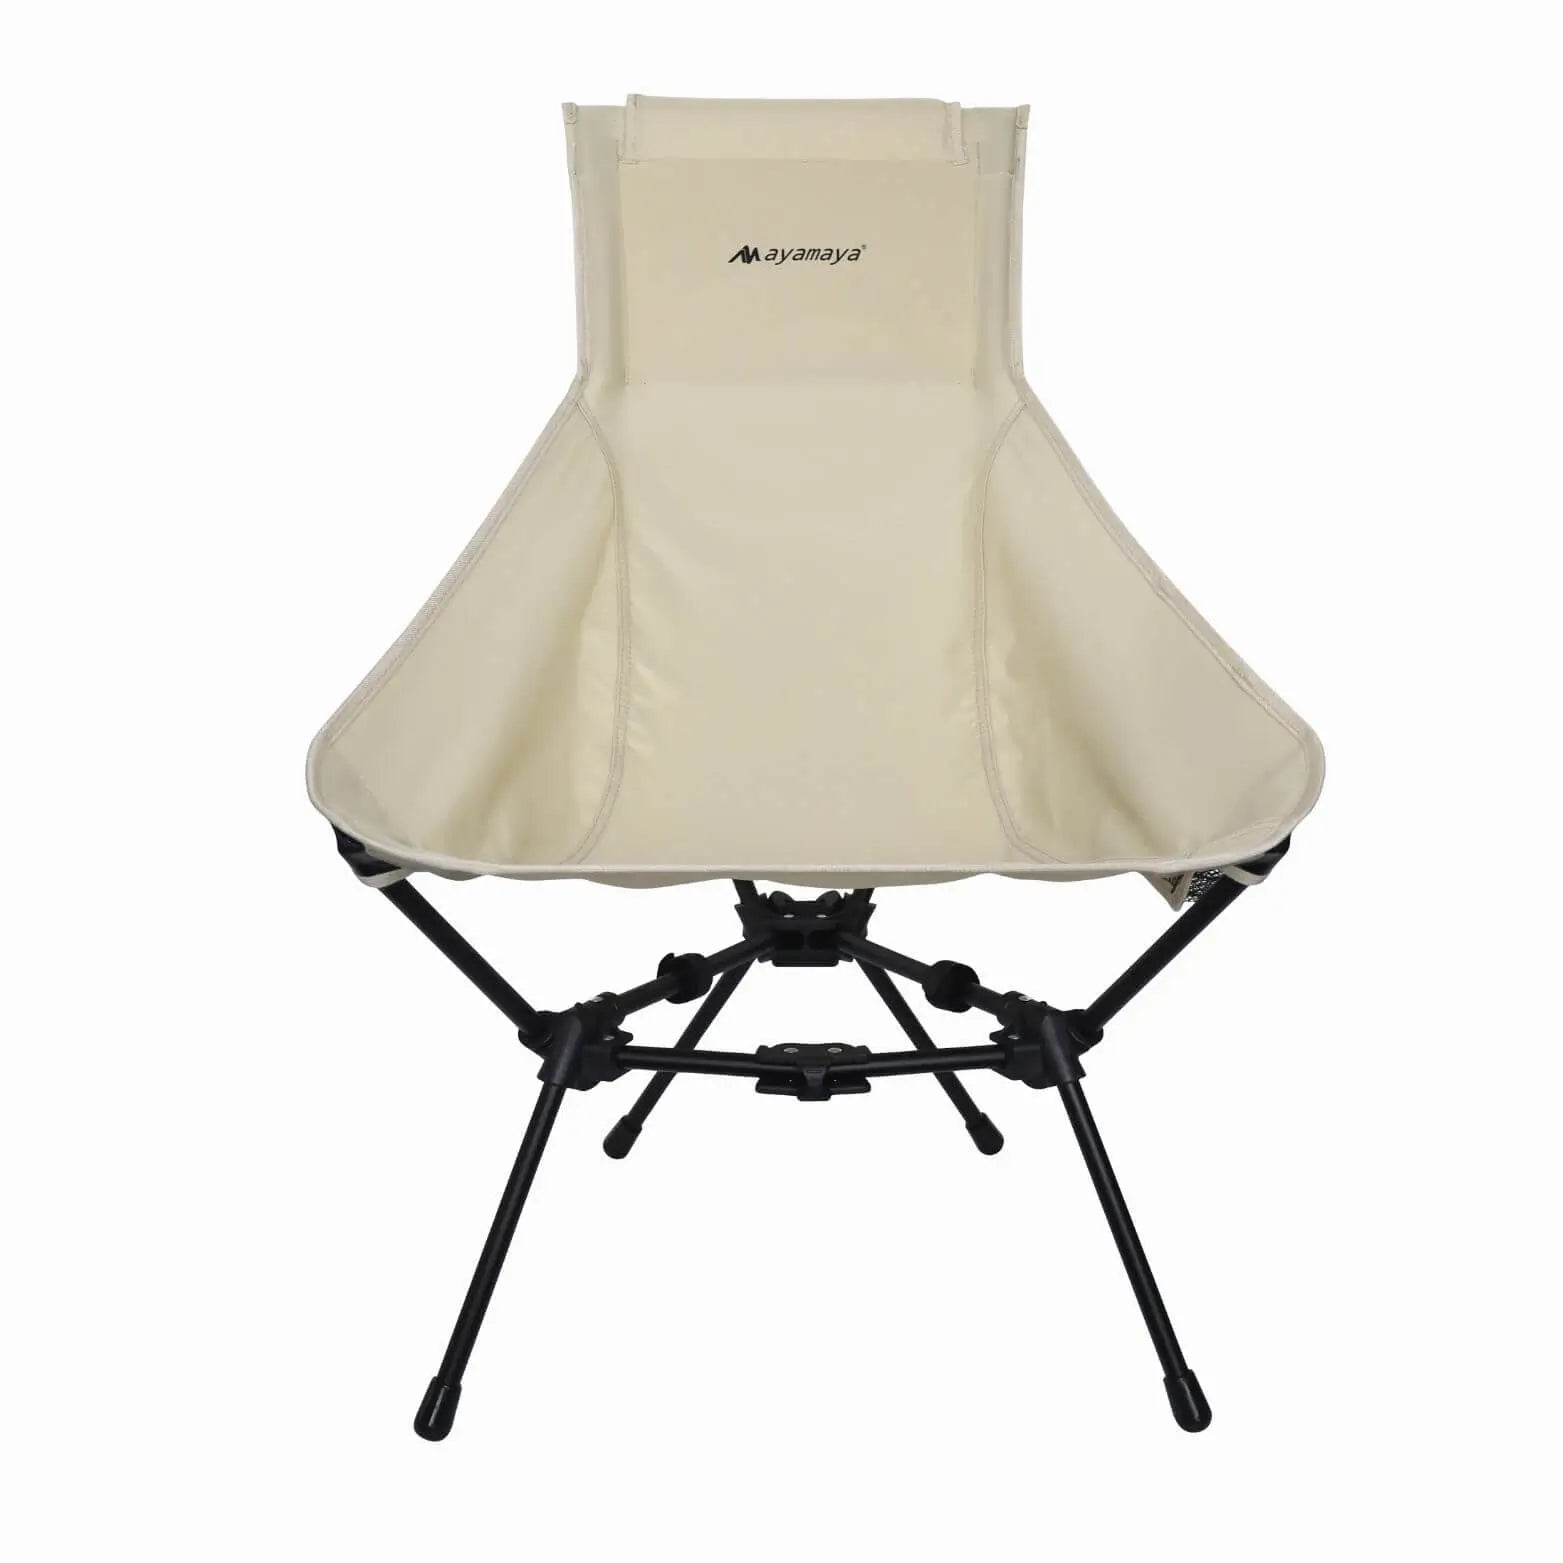 Everest Lounger High Back Ultralight Camping Chair